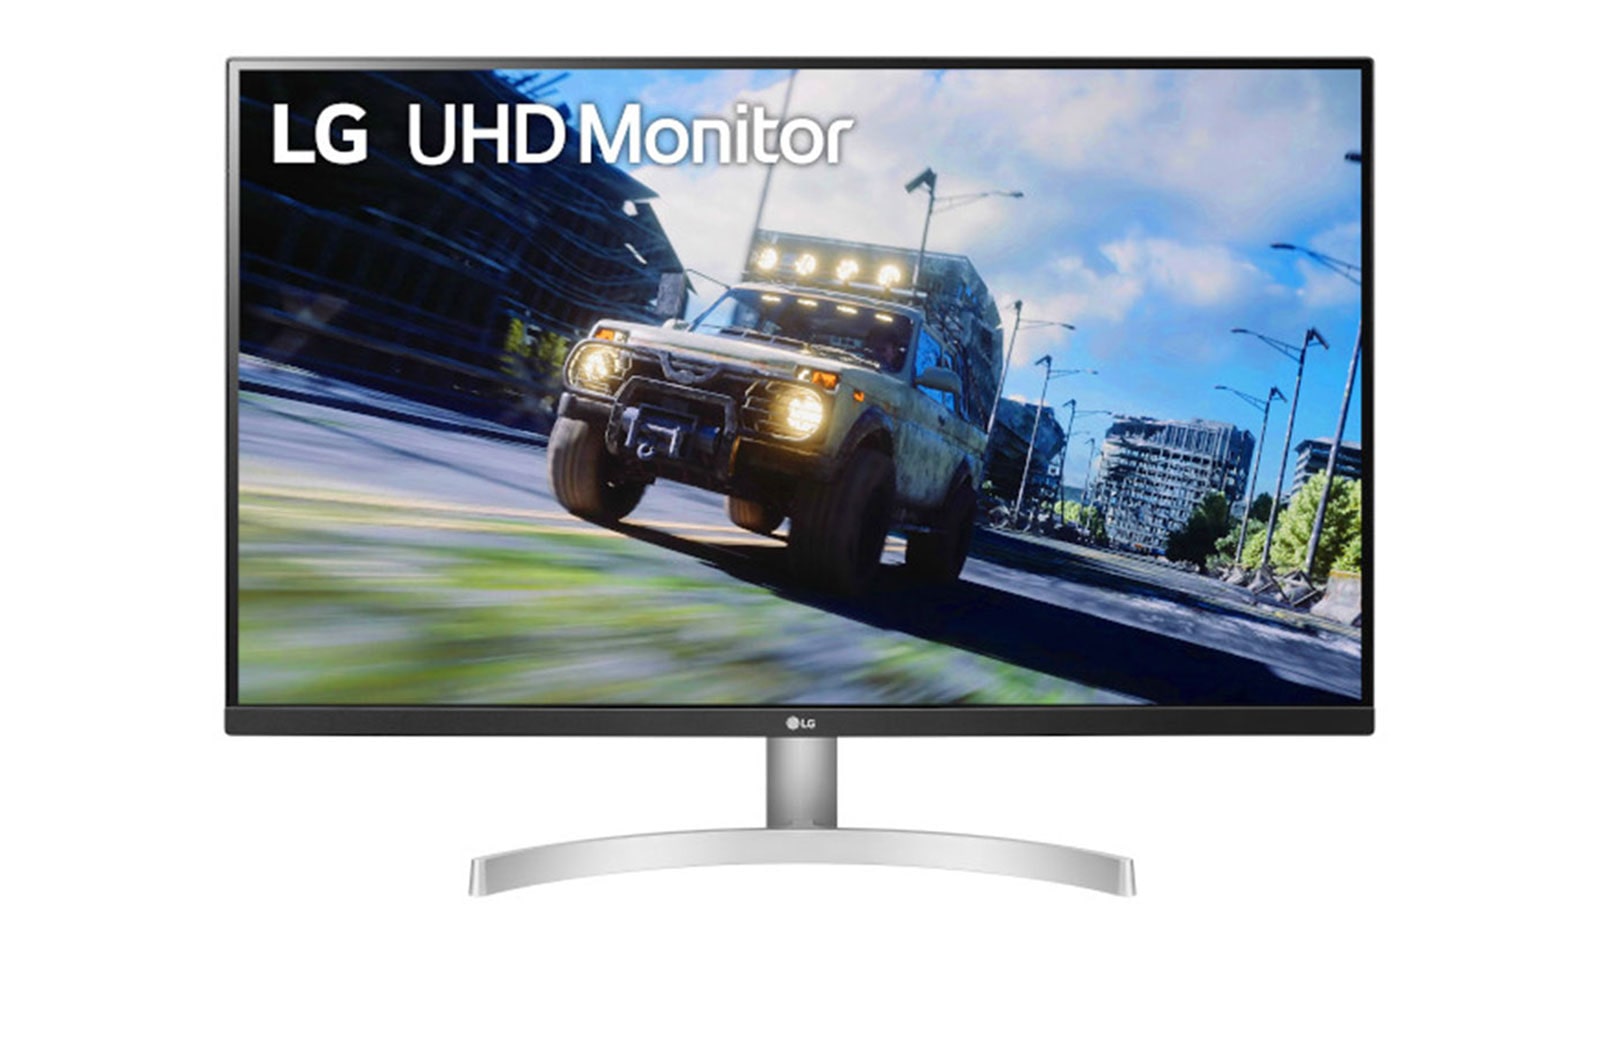 LG Monitor LG UHD 31.5'' VA 4K 3840x2160 60Hz 4ms (GtG) HDMI HDR10 AMD FreeSync Dynamic Action Sync 32UN500-W, 32UN500-W